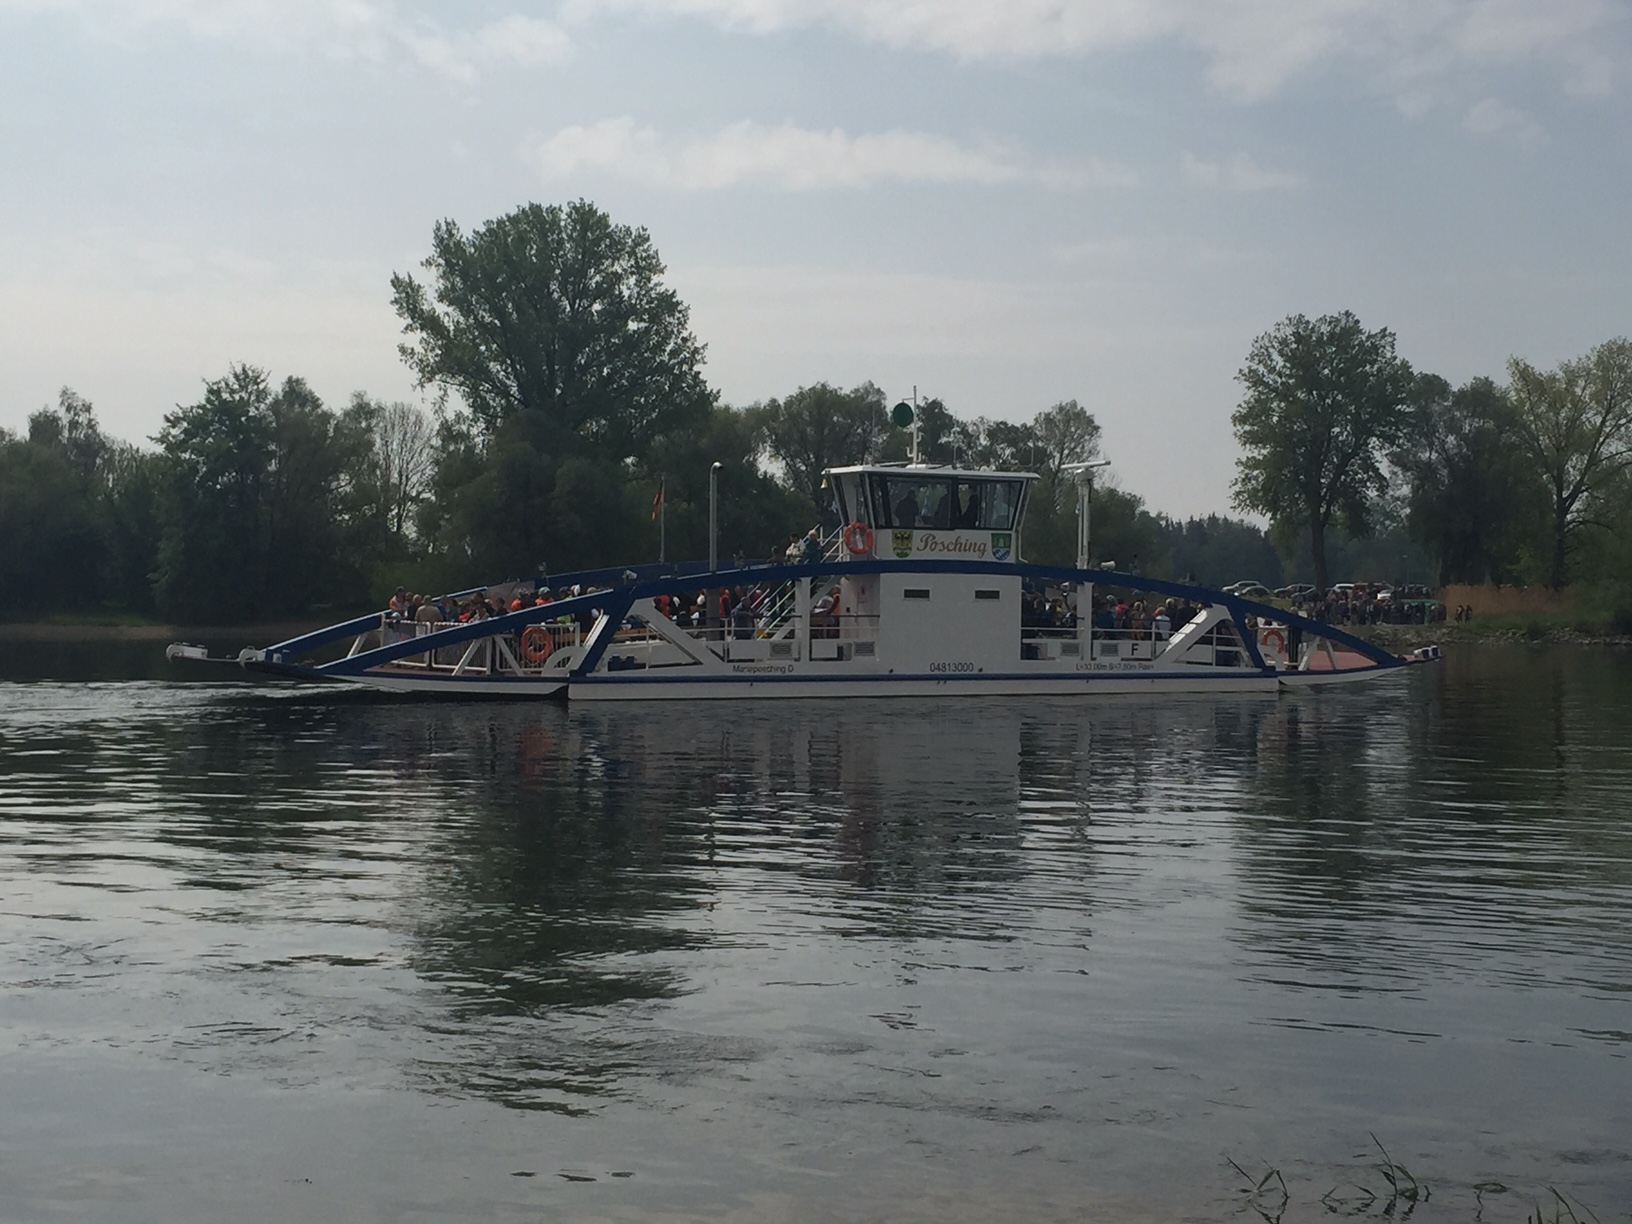 Donaufähre Posching fährt ab 1. April wieder im Sommerbetrieb